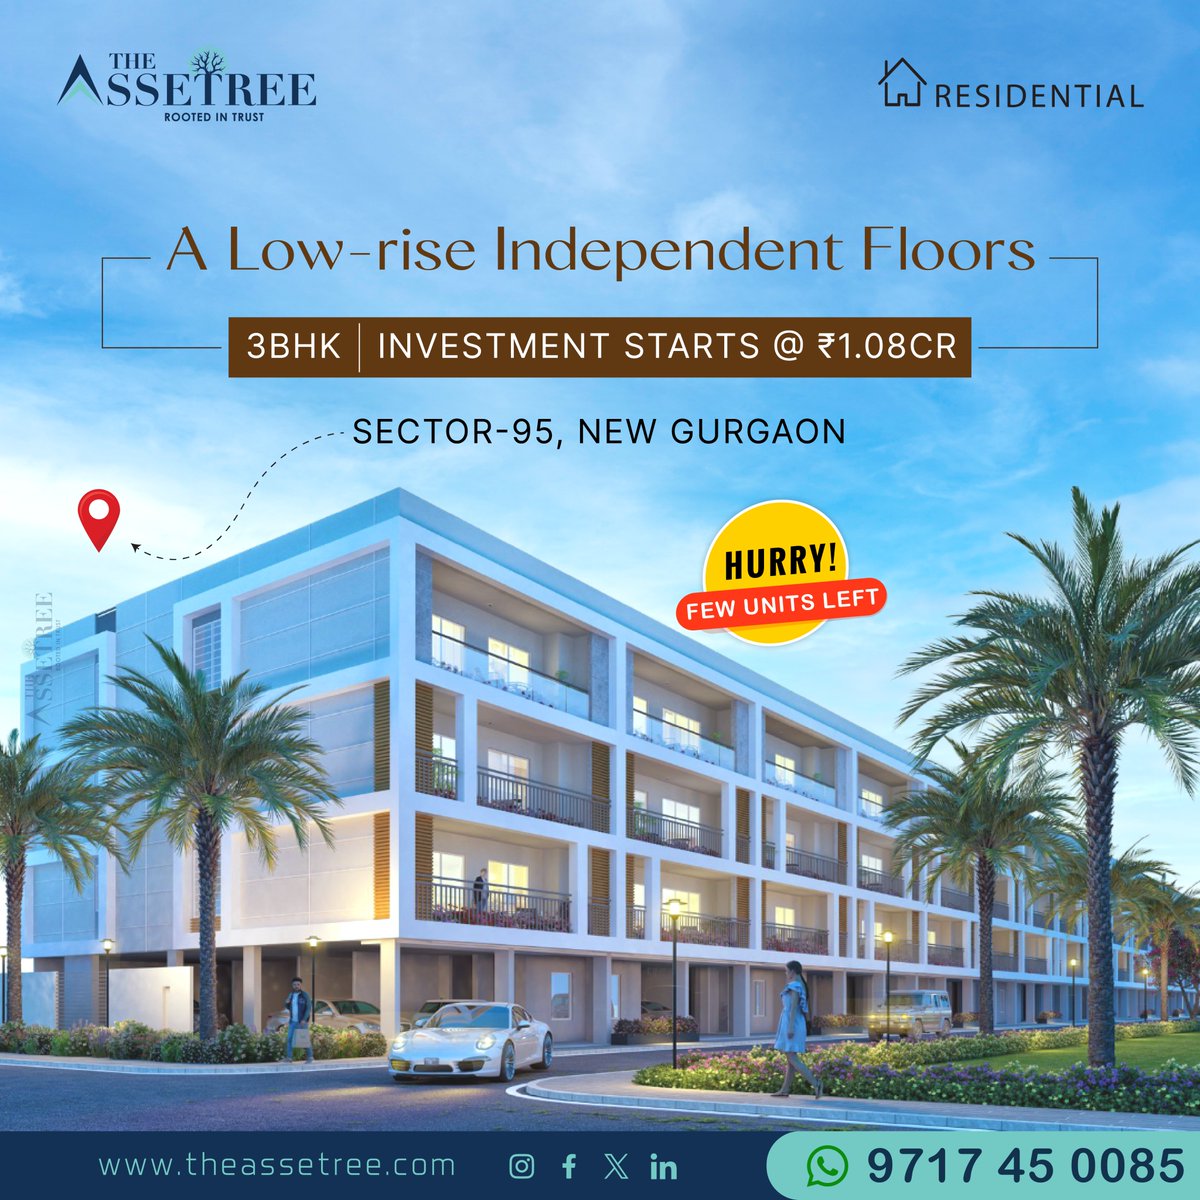 A Low-rise Independent Floors
#theassetree #rootedintrust #floors #sector95 #newgurgaon #fewunitsleft #independentfloors #avana #landmarkavanagurgaon